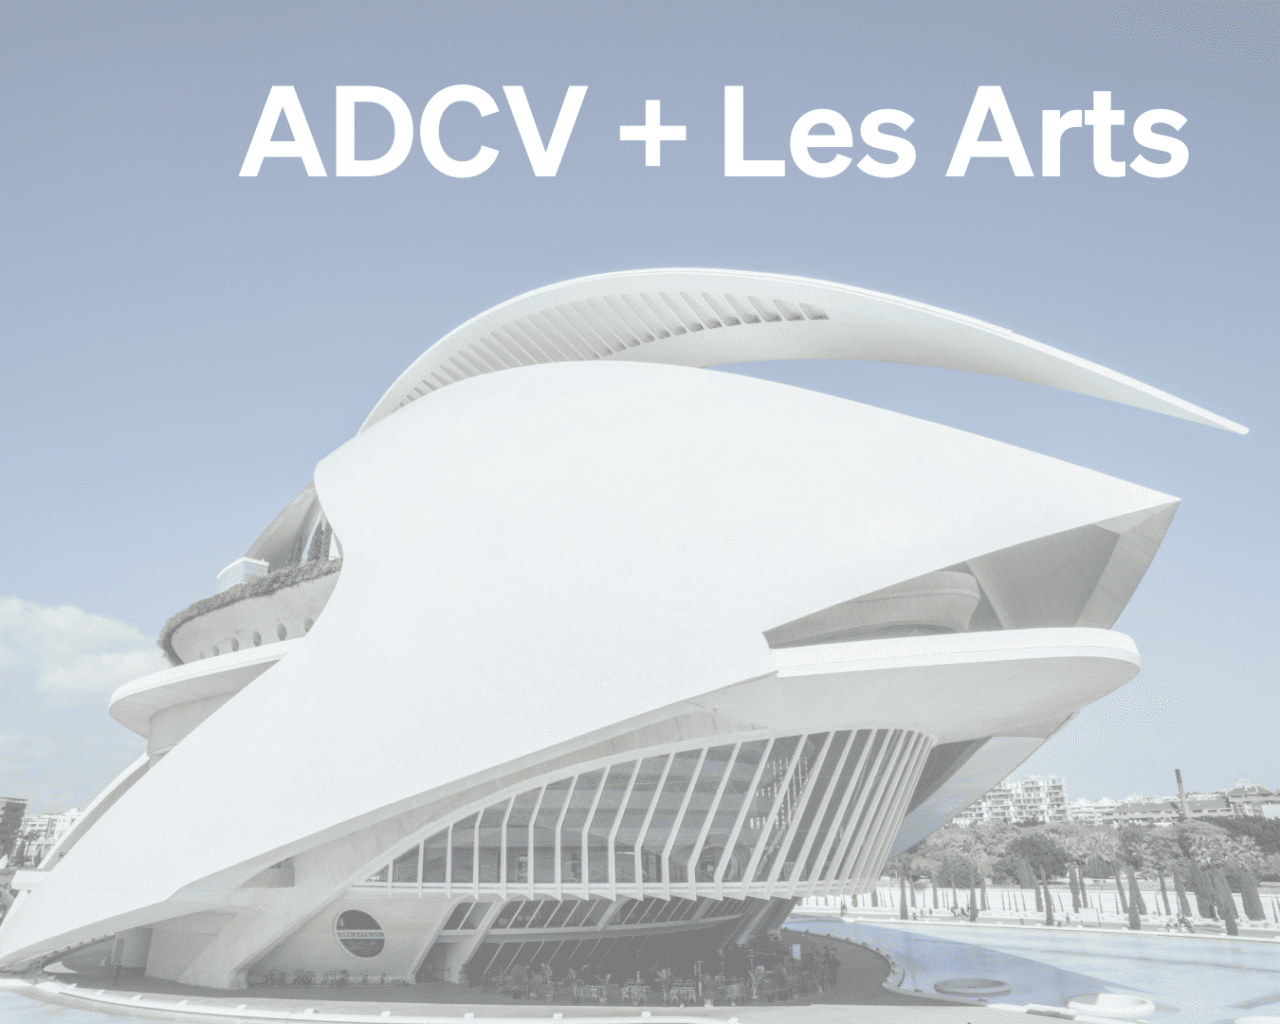 Col·laboració de ADCV i Les Arts amb accions especials per als i les sòcies